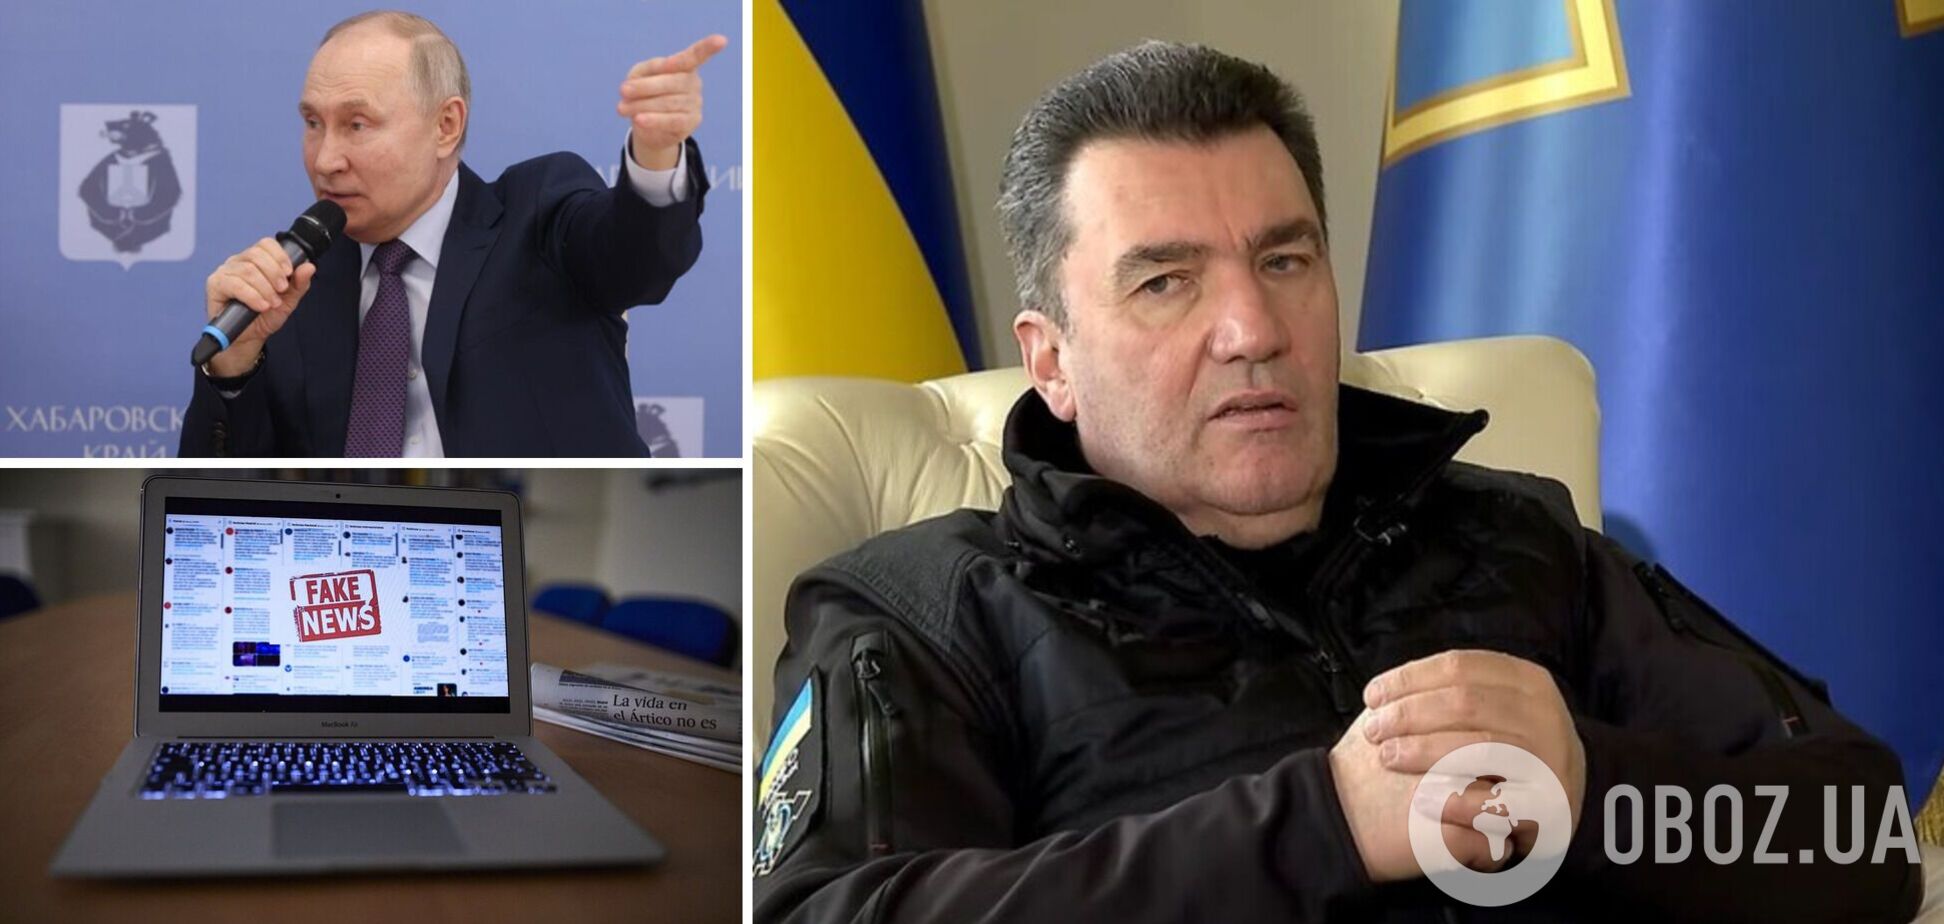 Следующие несколько месяцев будут для Украины очень тяжелыми, но мы готовы, – Данилов.